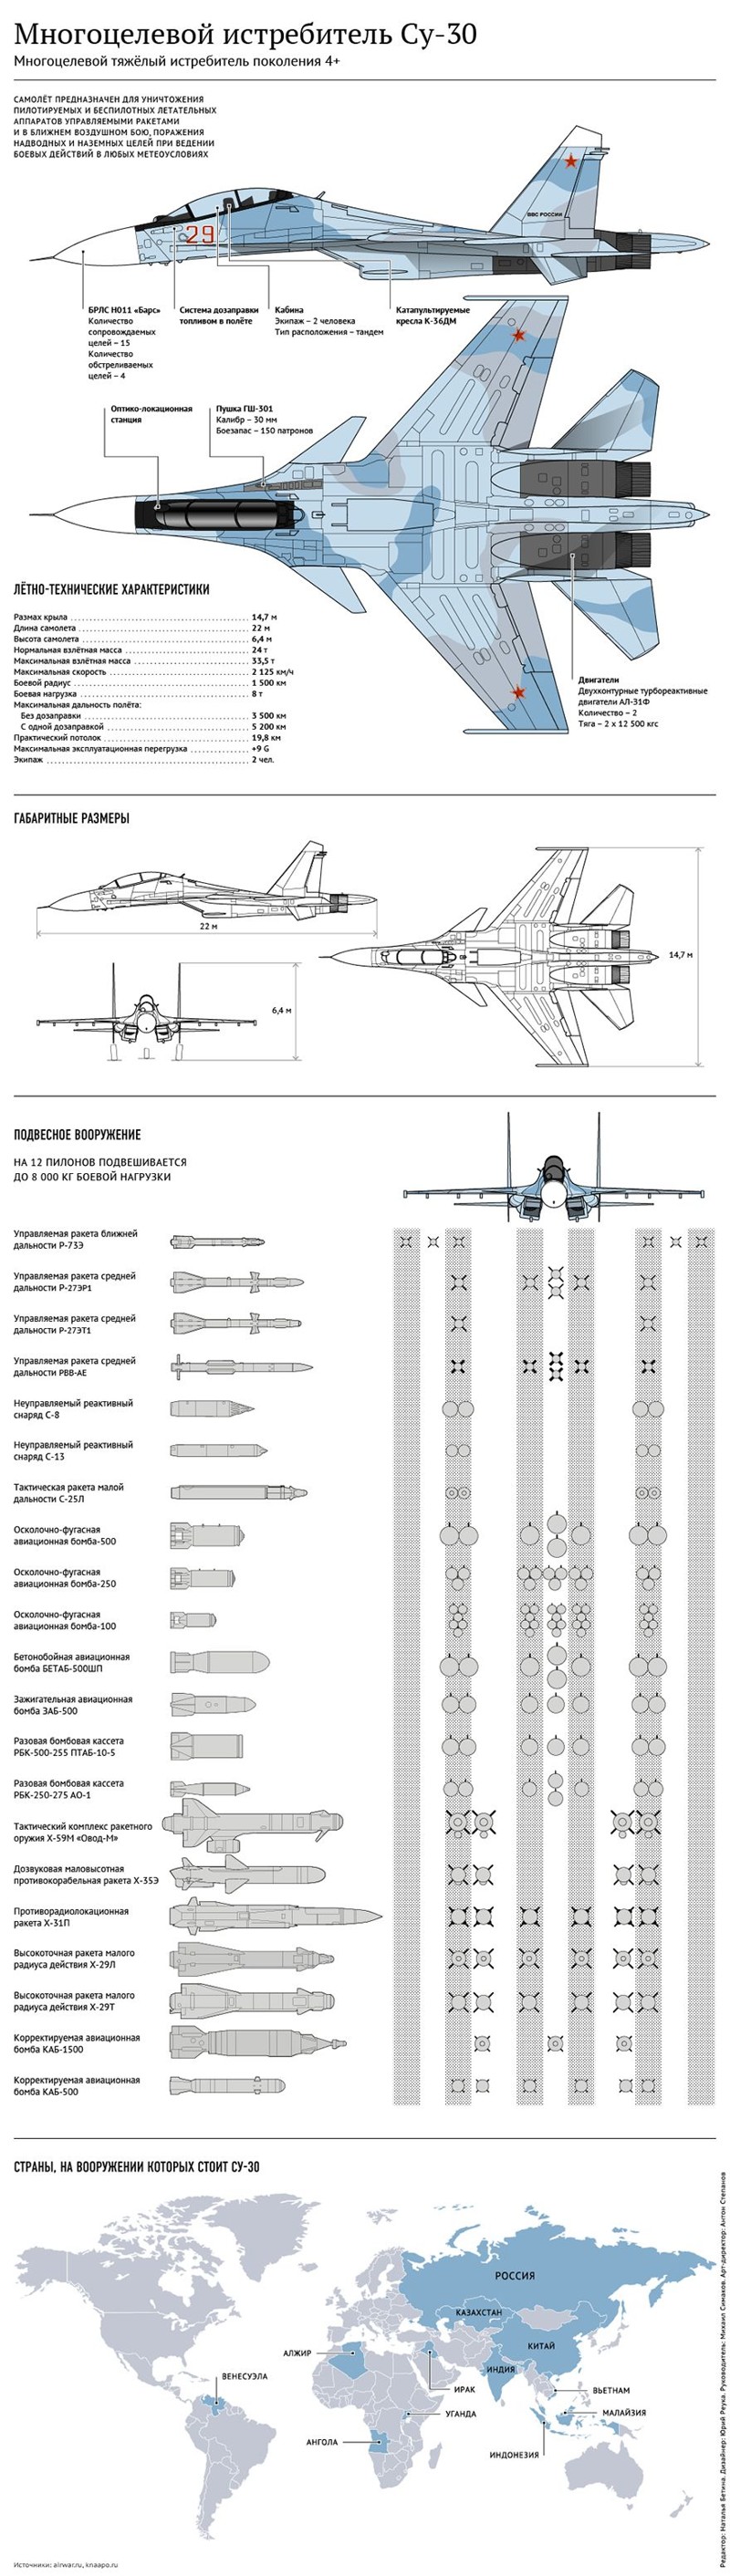 Новая партия Су-30СМ передана морской авиации ВМФ РФ